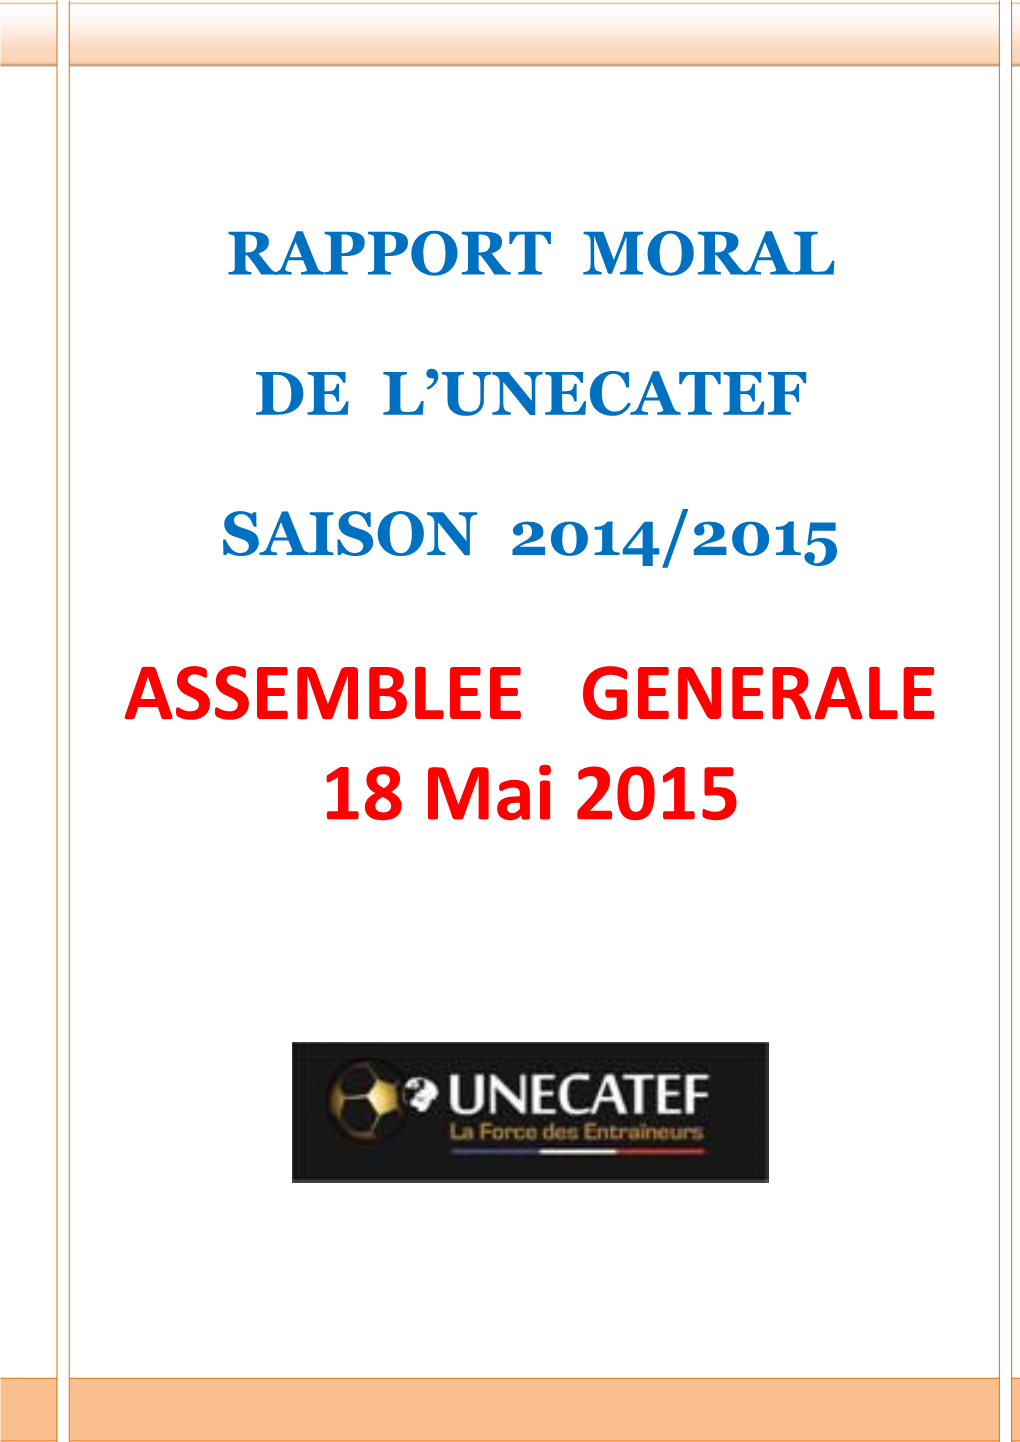 ASSEMBLEE GENERALE 18 Mai 2015